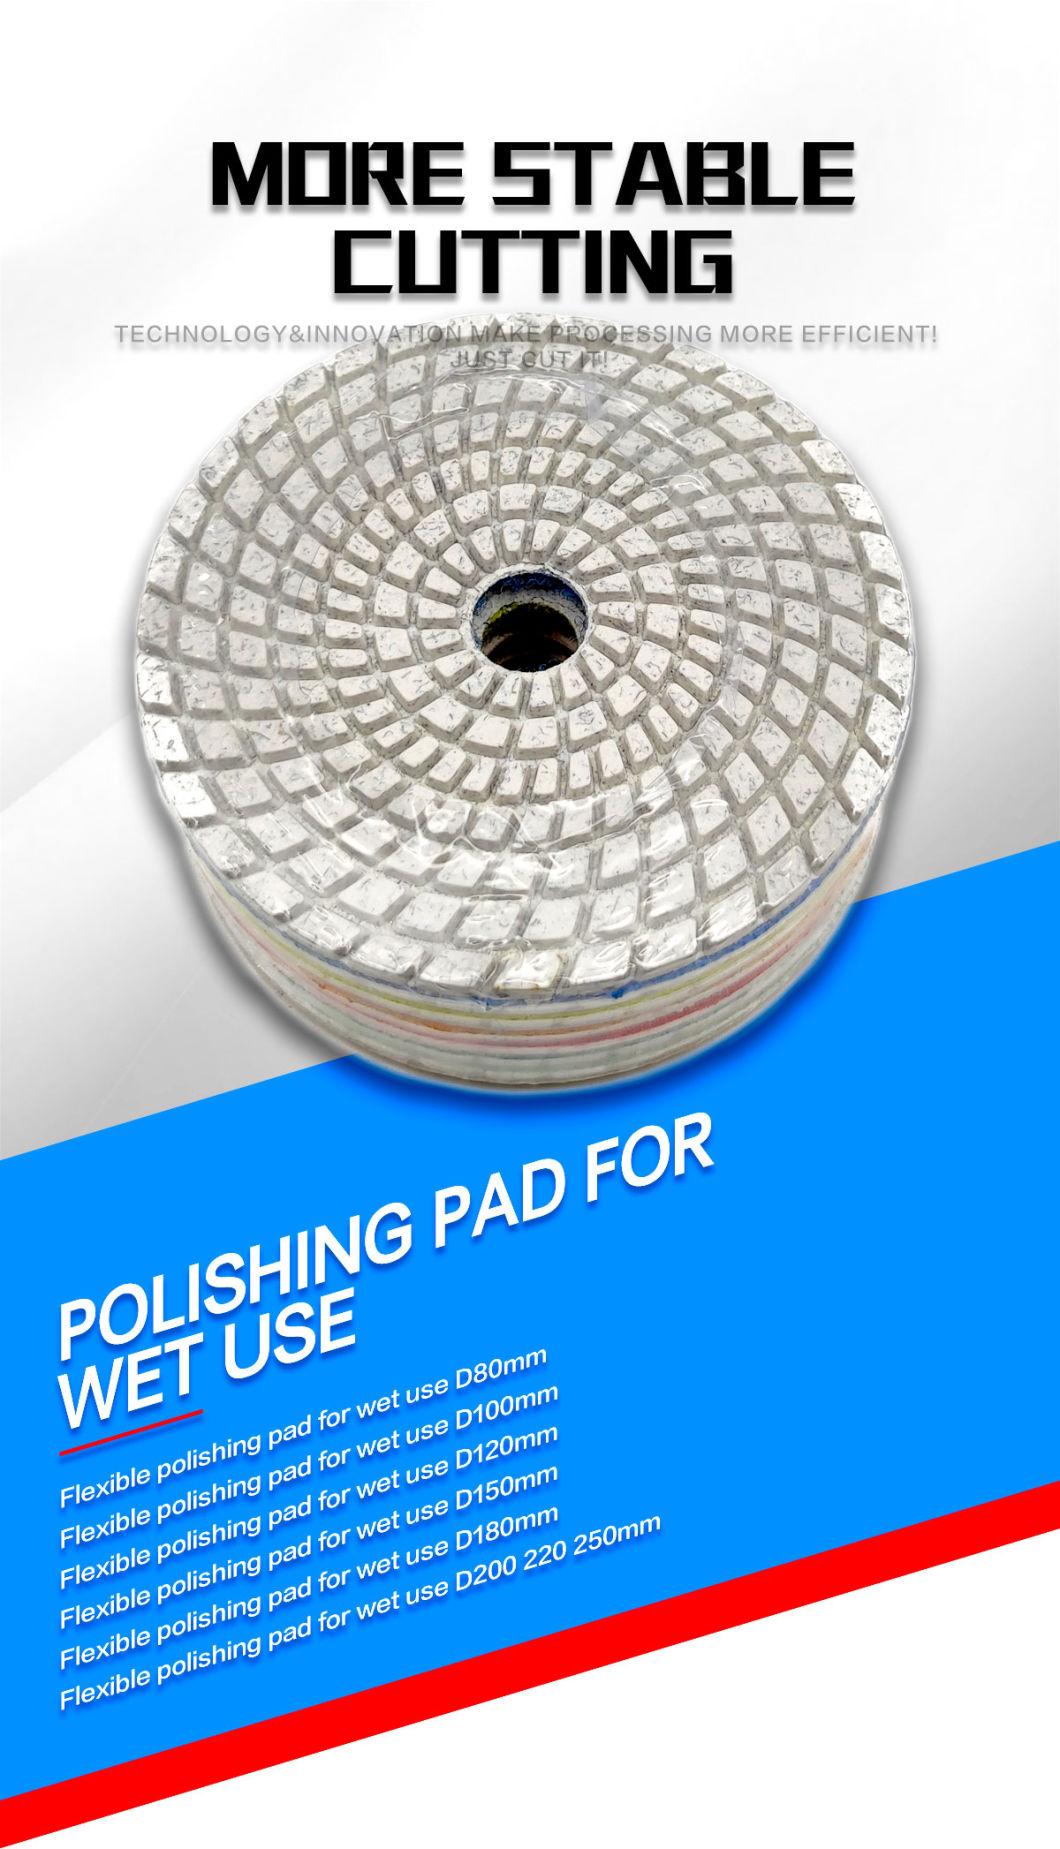 #400 High Efficiency Polishing Pad Inc for Dry Polishing